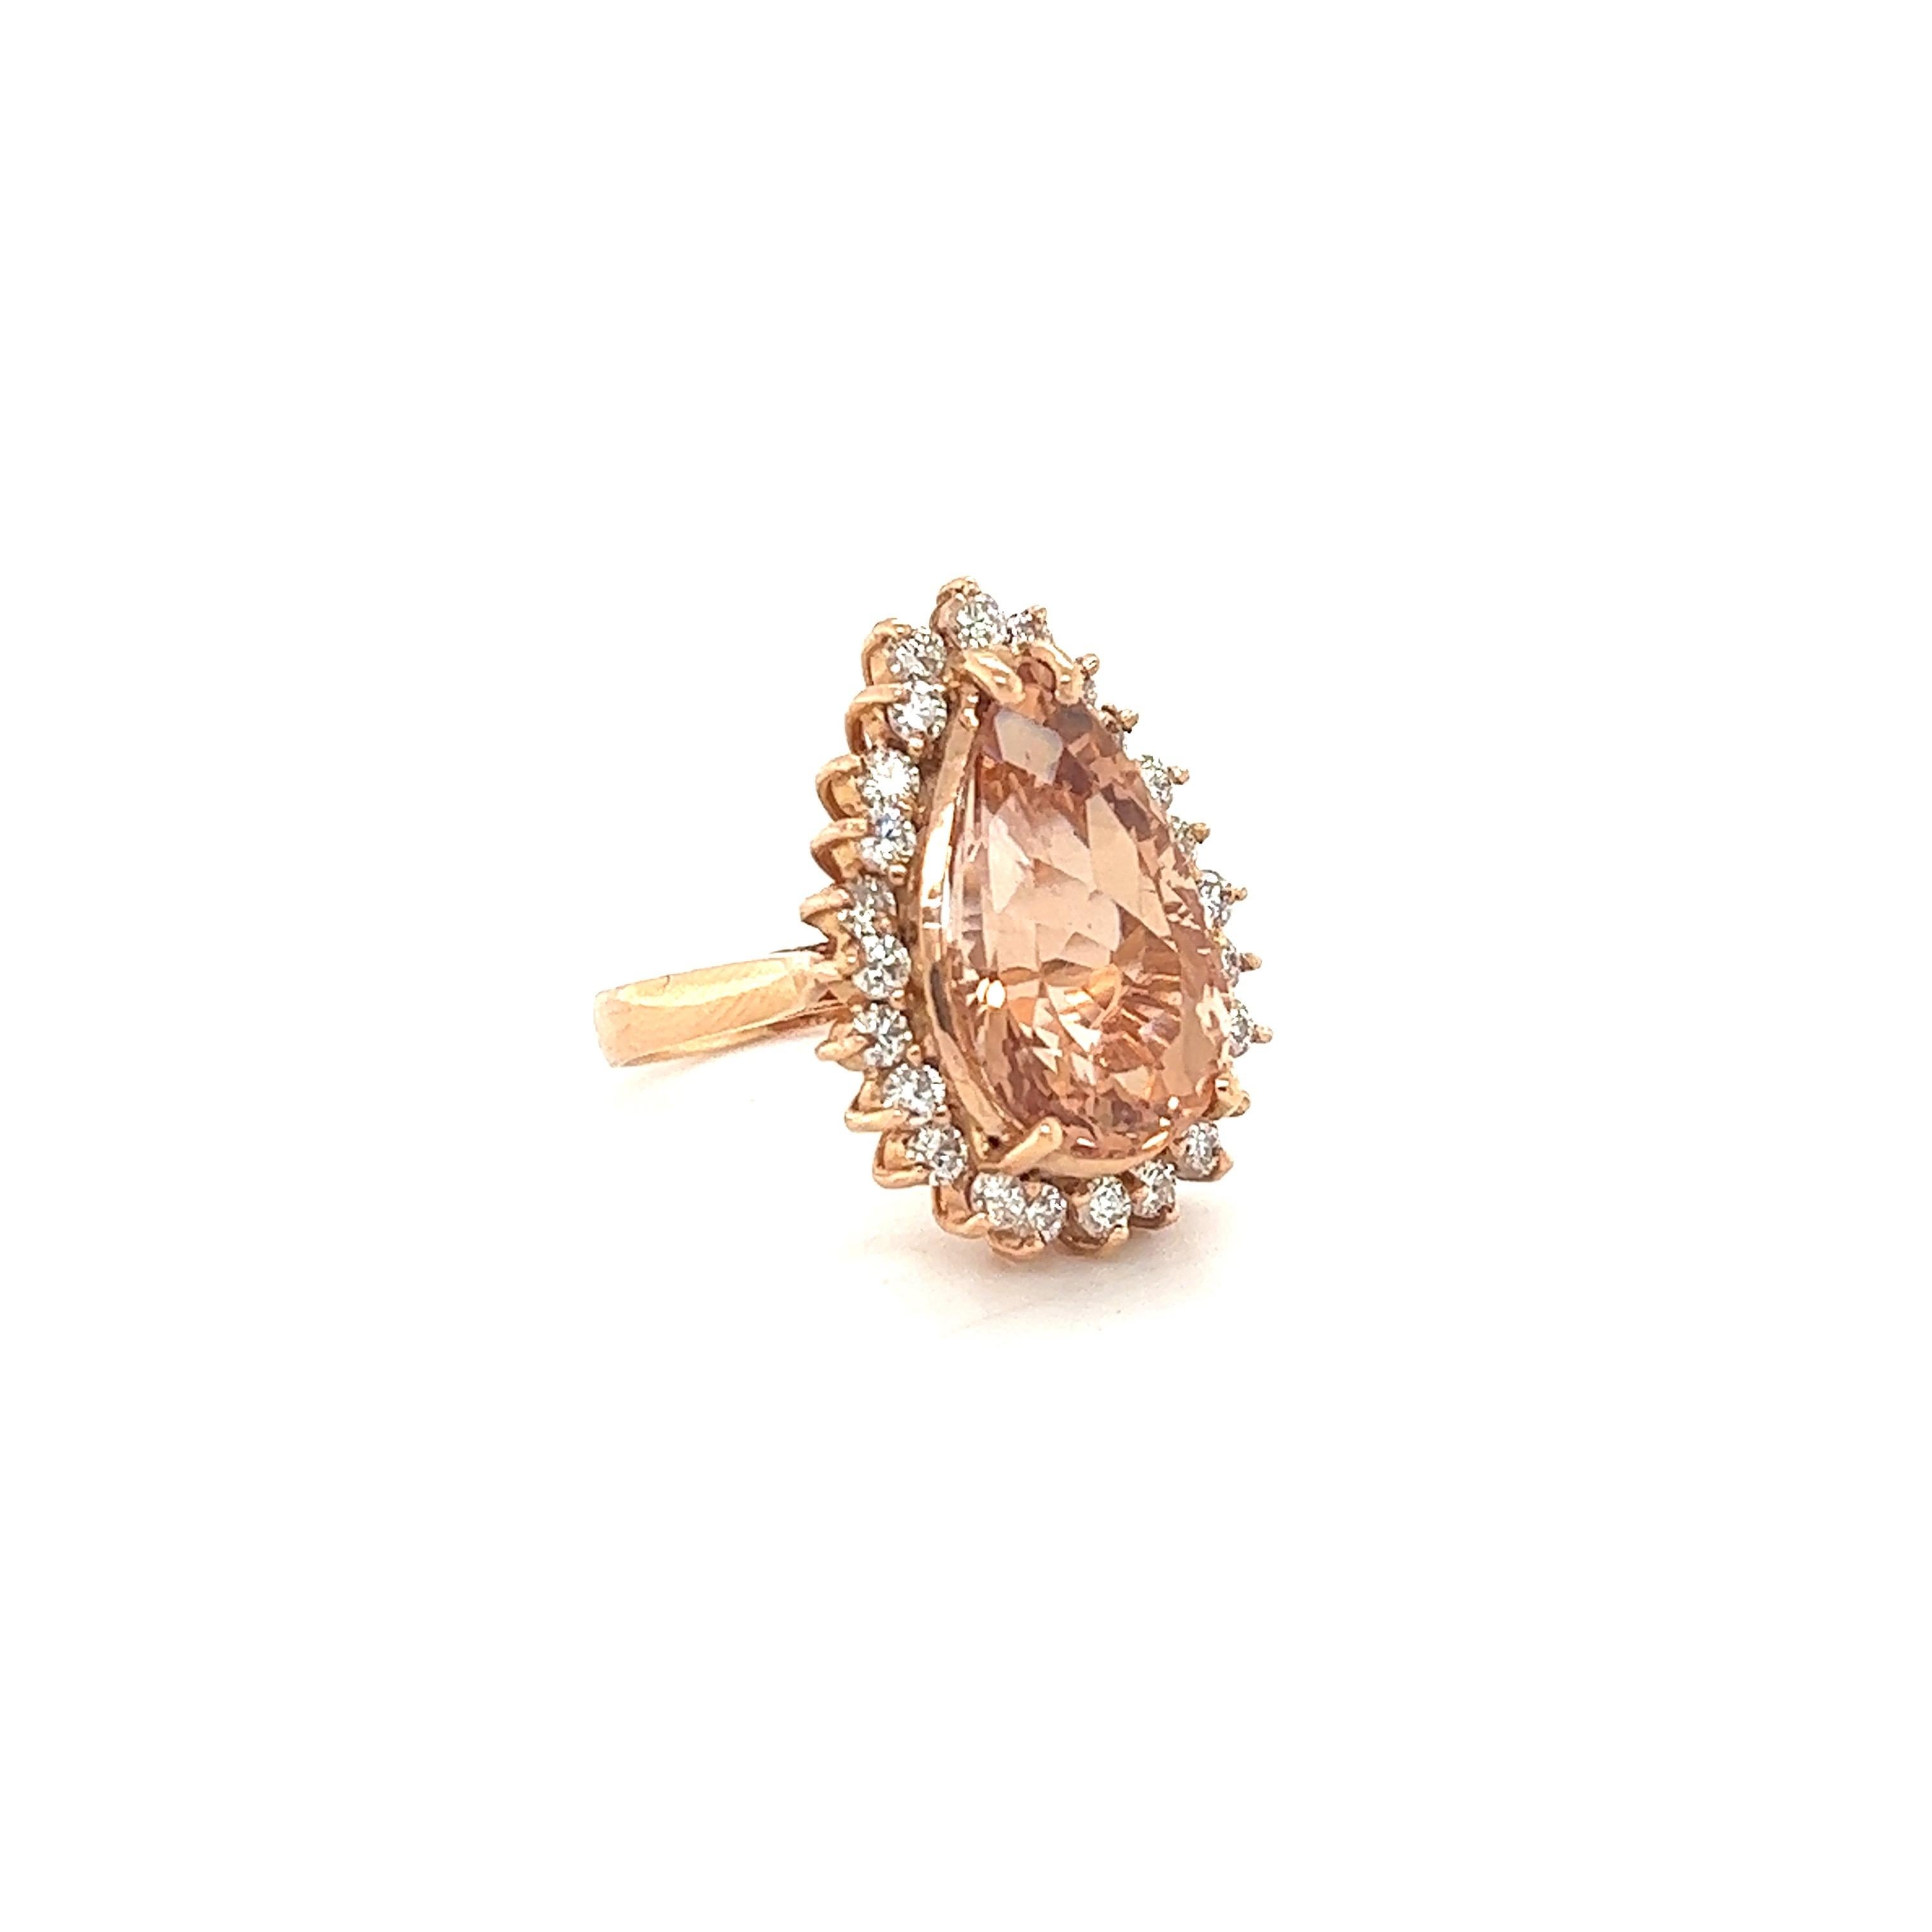 Dieser Morganit Ring hat einen 8,17 Karat Karat Birnenschliff rosa Morganit, die bei 17 mm x 10 mm misst und ist von einem Halo von 24 Rundschliff Diamanten, die 0,98 Karat wiegen umgeben. Die Diamanten haben eine Reinheit und Farbe von VS-H. Das